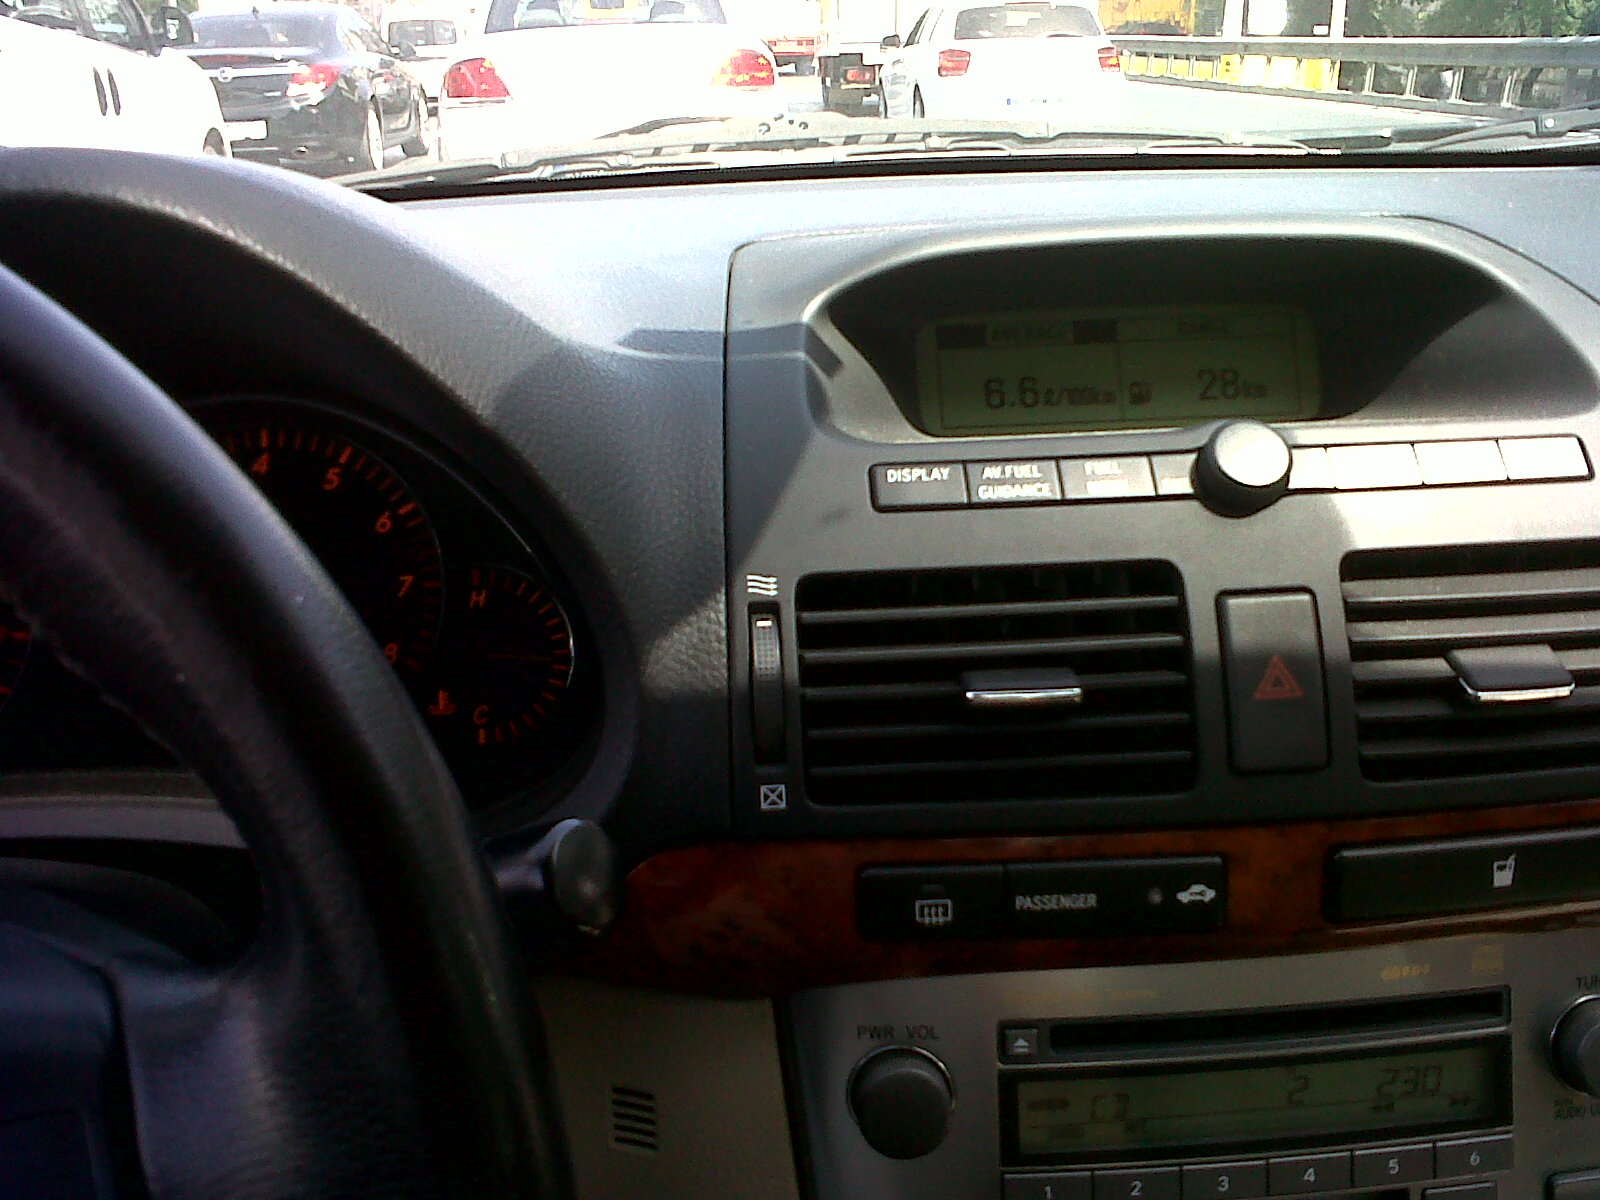  1.6 Avensis resimli yakıt tüketimi (5.4 lt geldi)